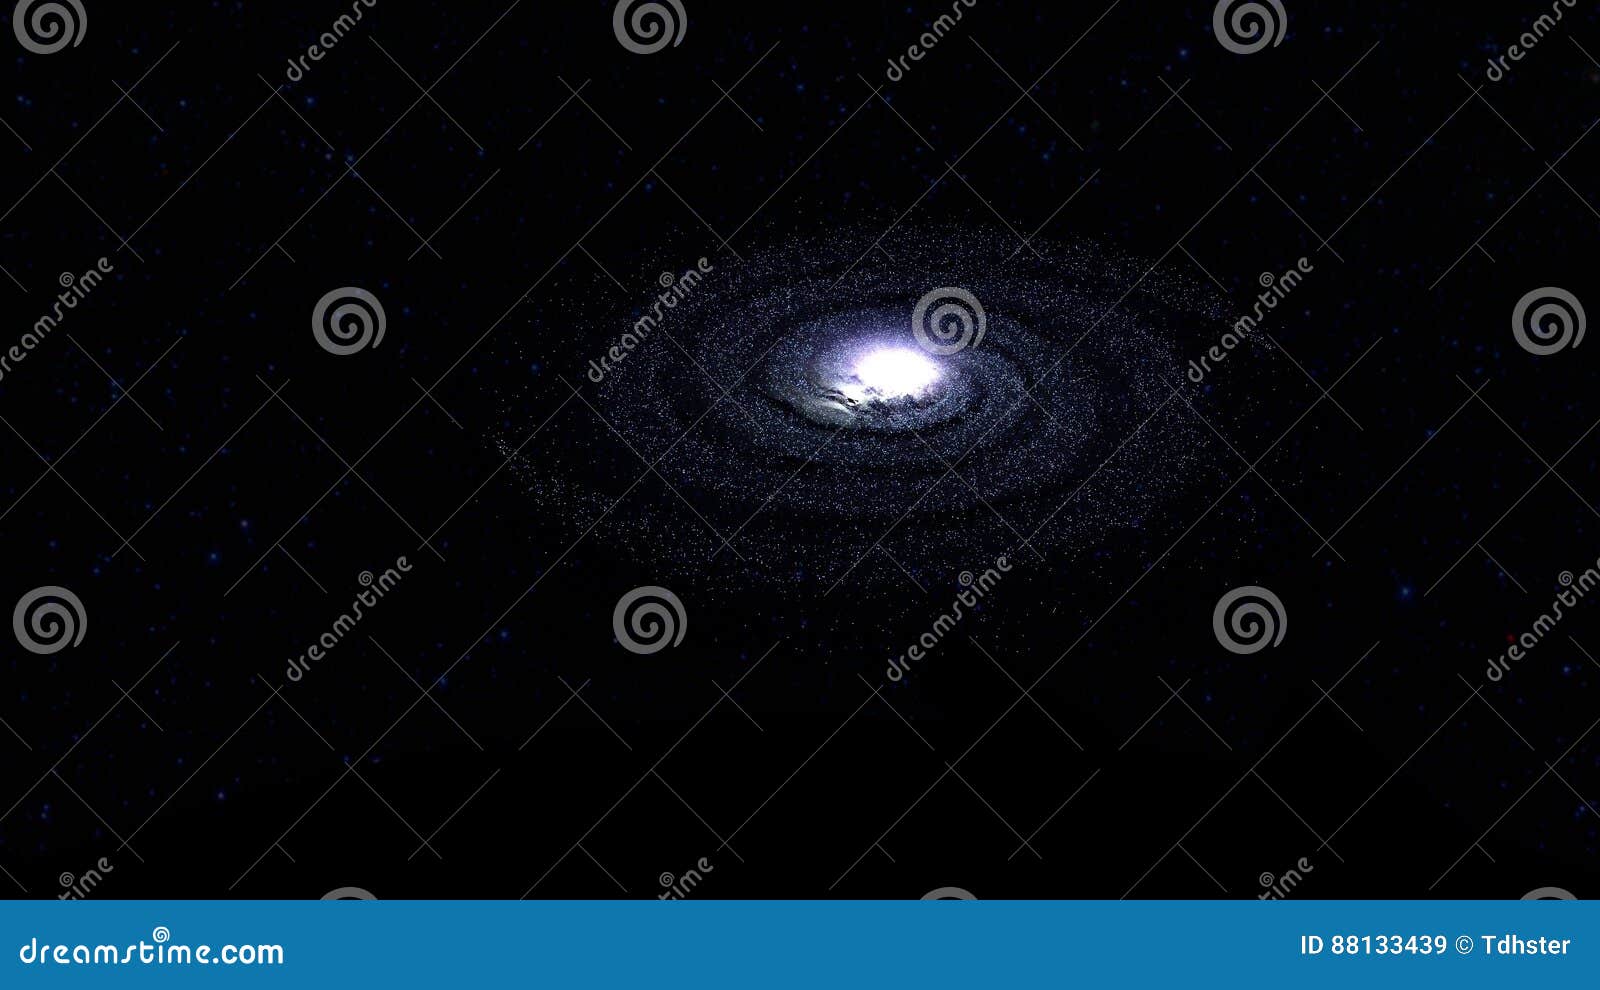 Galaxia espiral en el ejemplo del espacio 3d. La galaxia espiral en el espacio profundo 3d rinde